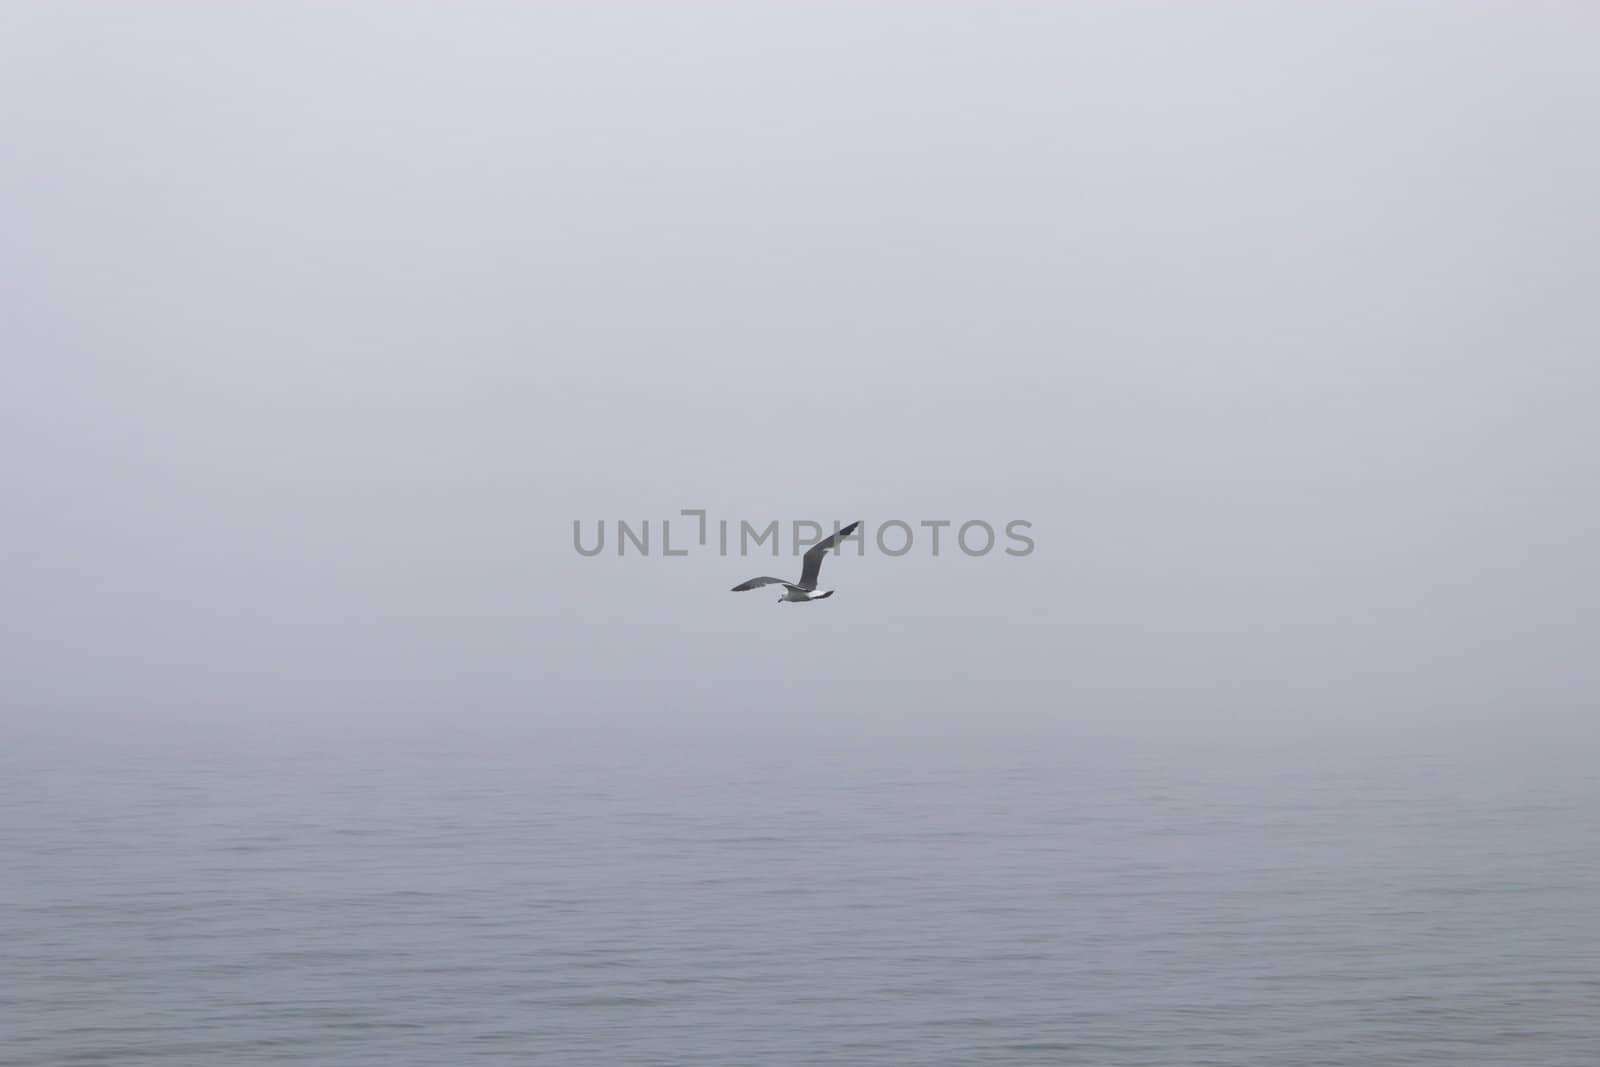 Seagulls in a fog by selezenj